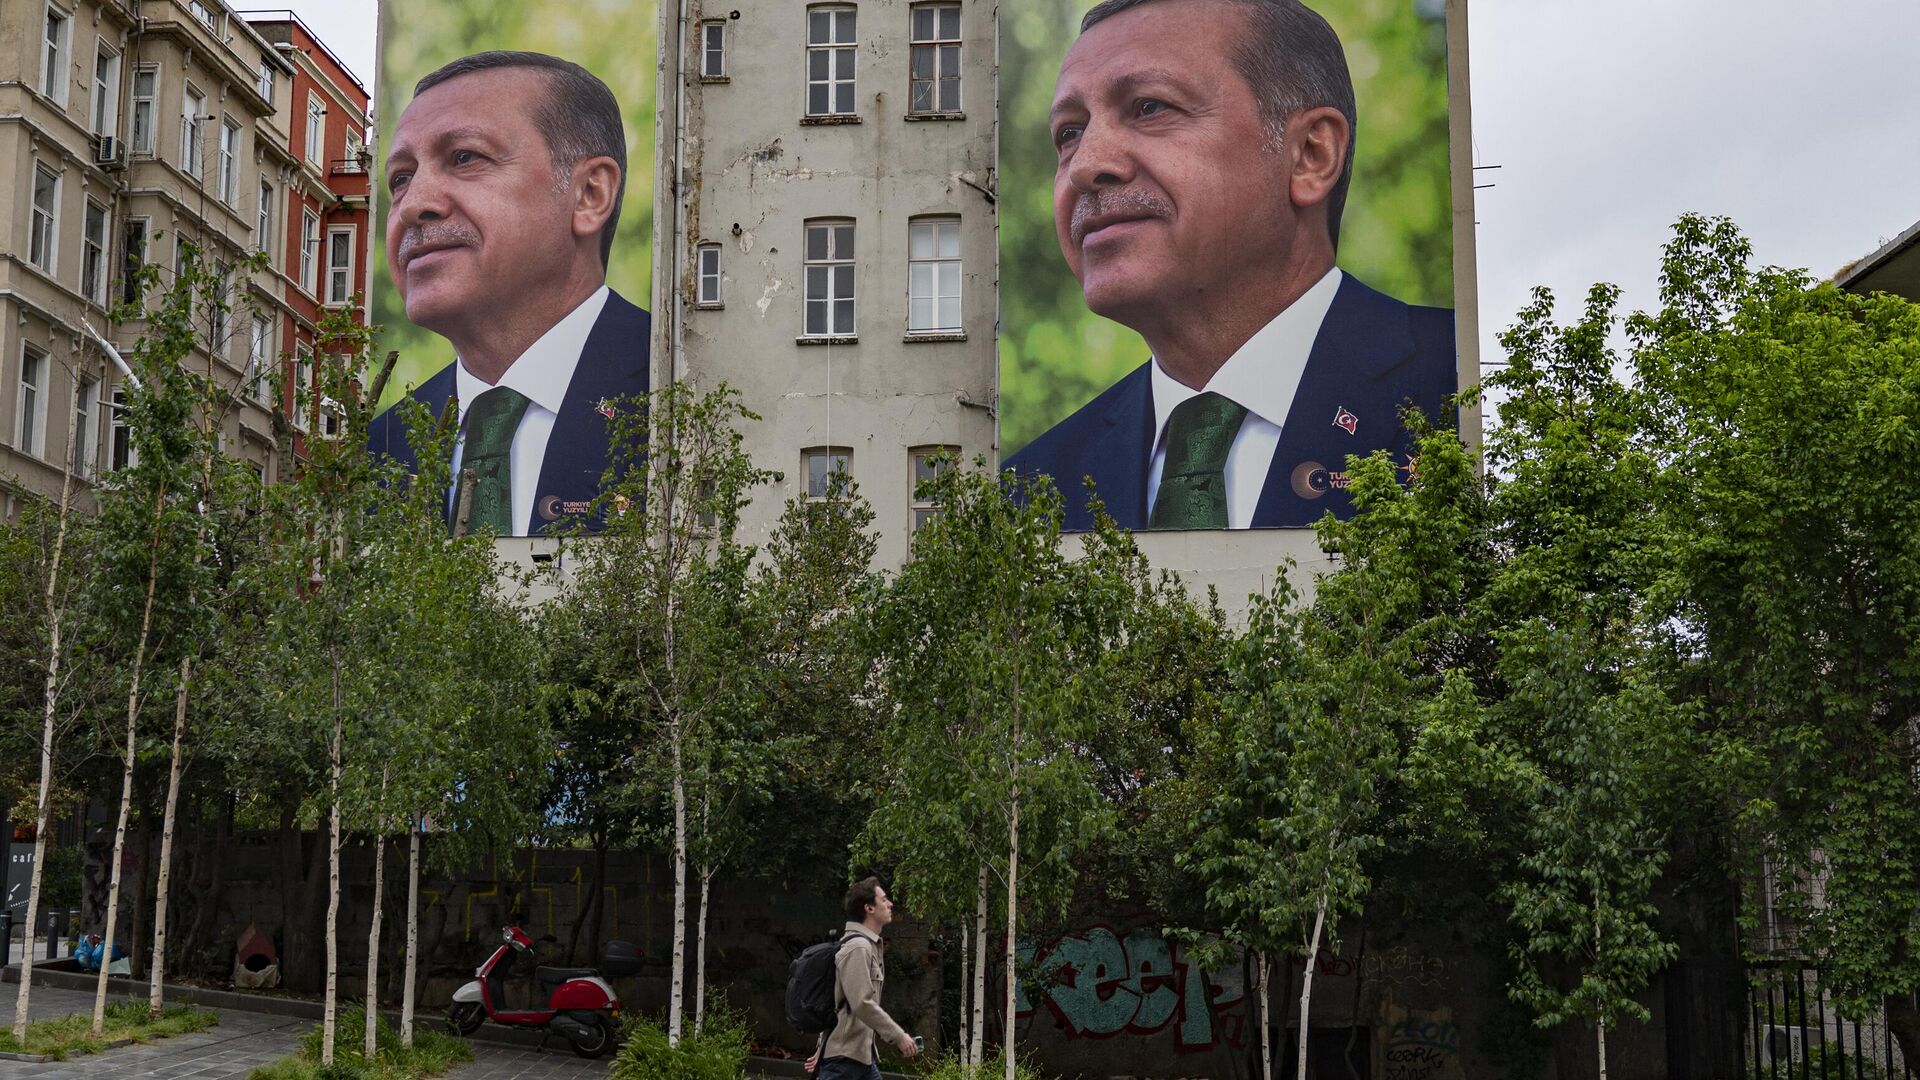 أردوغان رئيسا لتركيا لولاية جديدة.. انتصار آخر في مسيرة حافلة بالاختبارات الصعبة